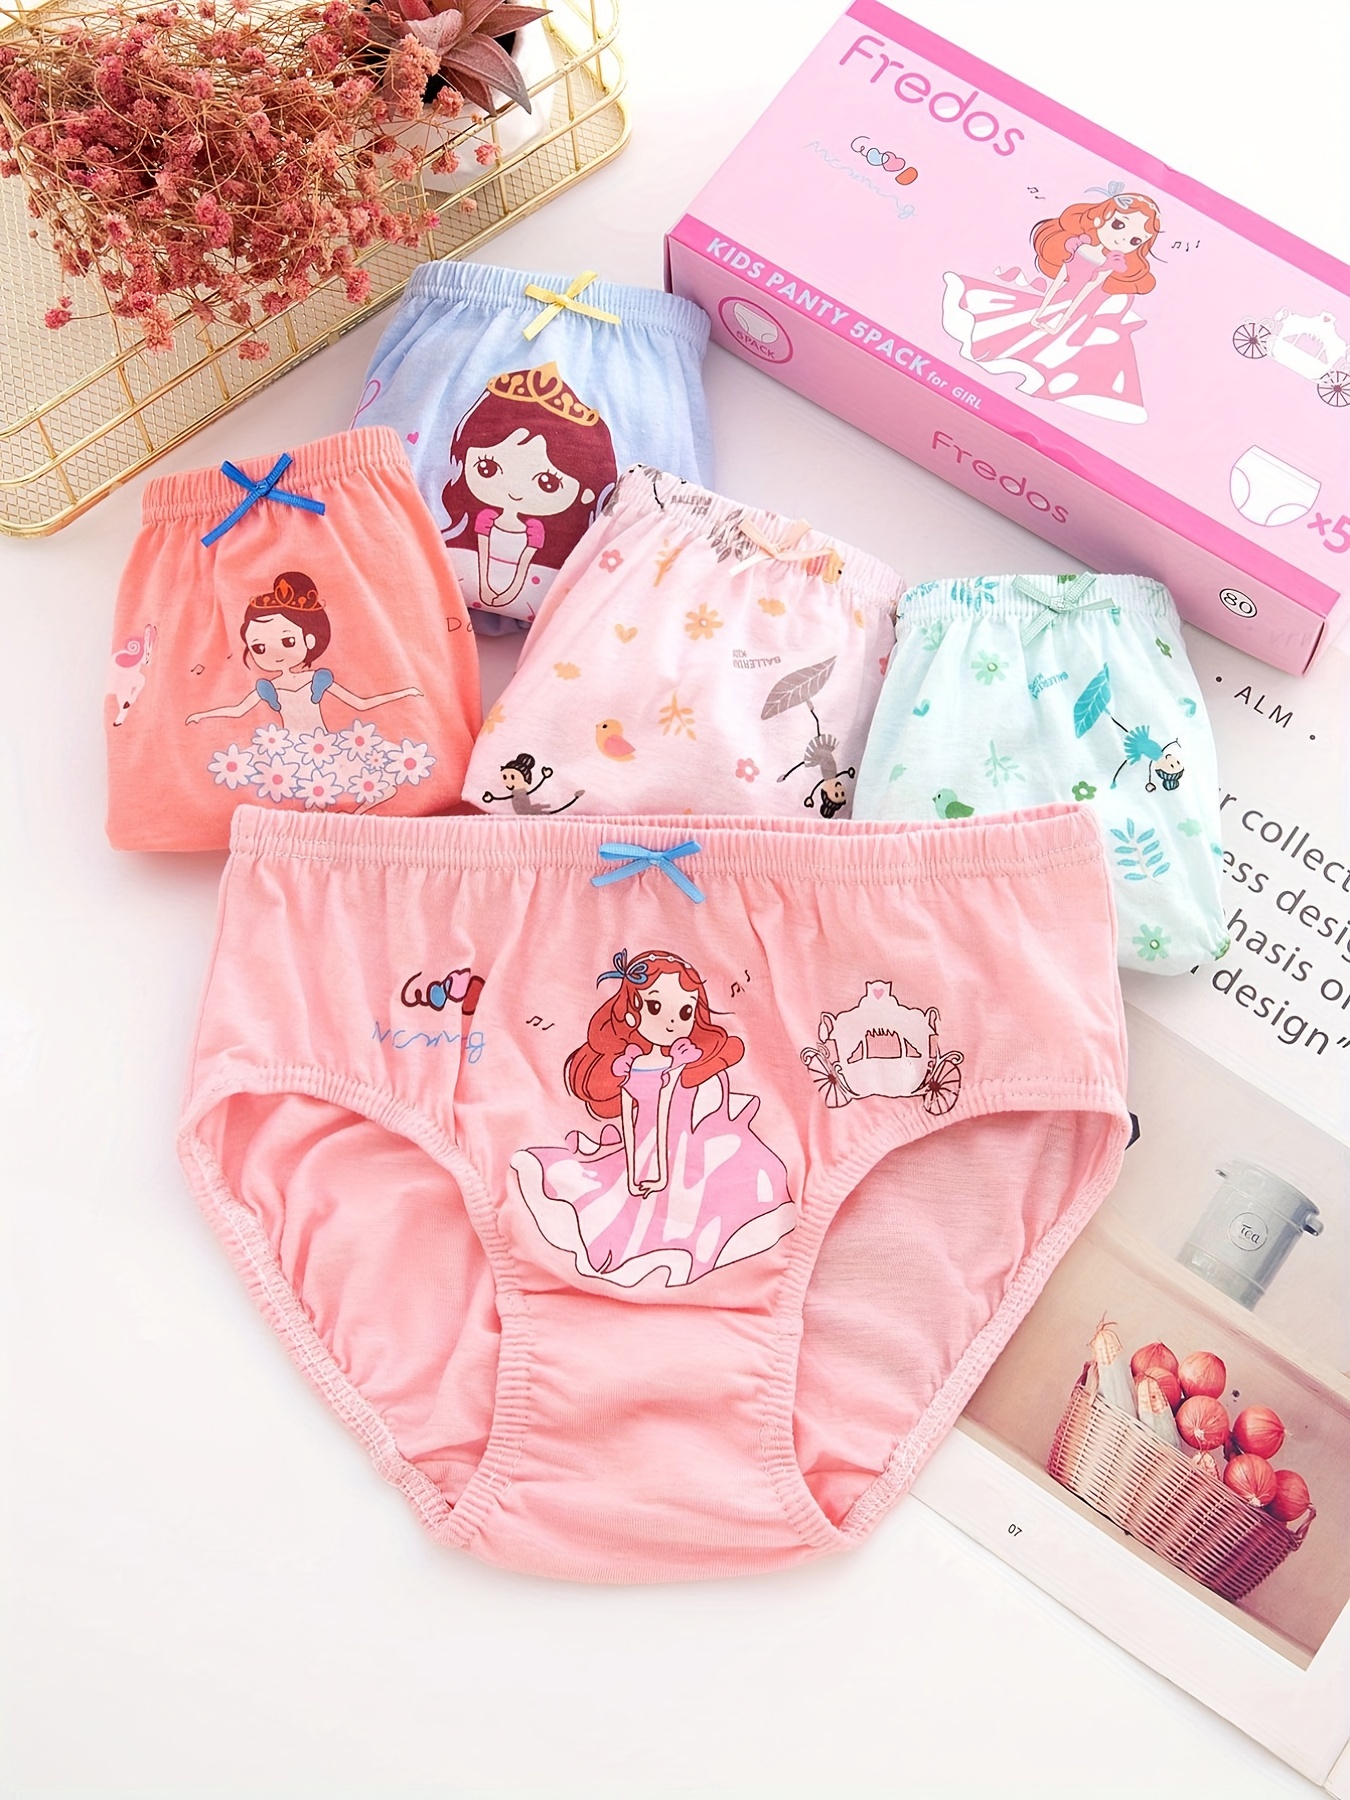 6 Packs Kids Girls Colorful Panties Briefs Cute Horse Printed Underwear  2-7Y